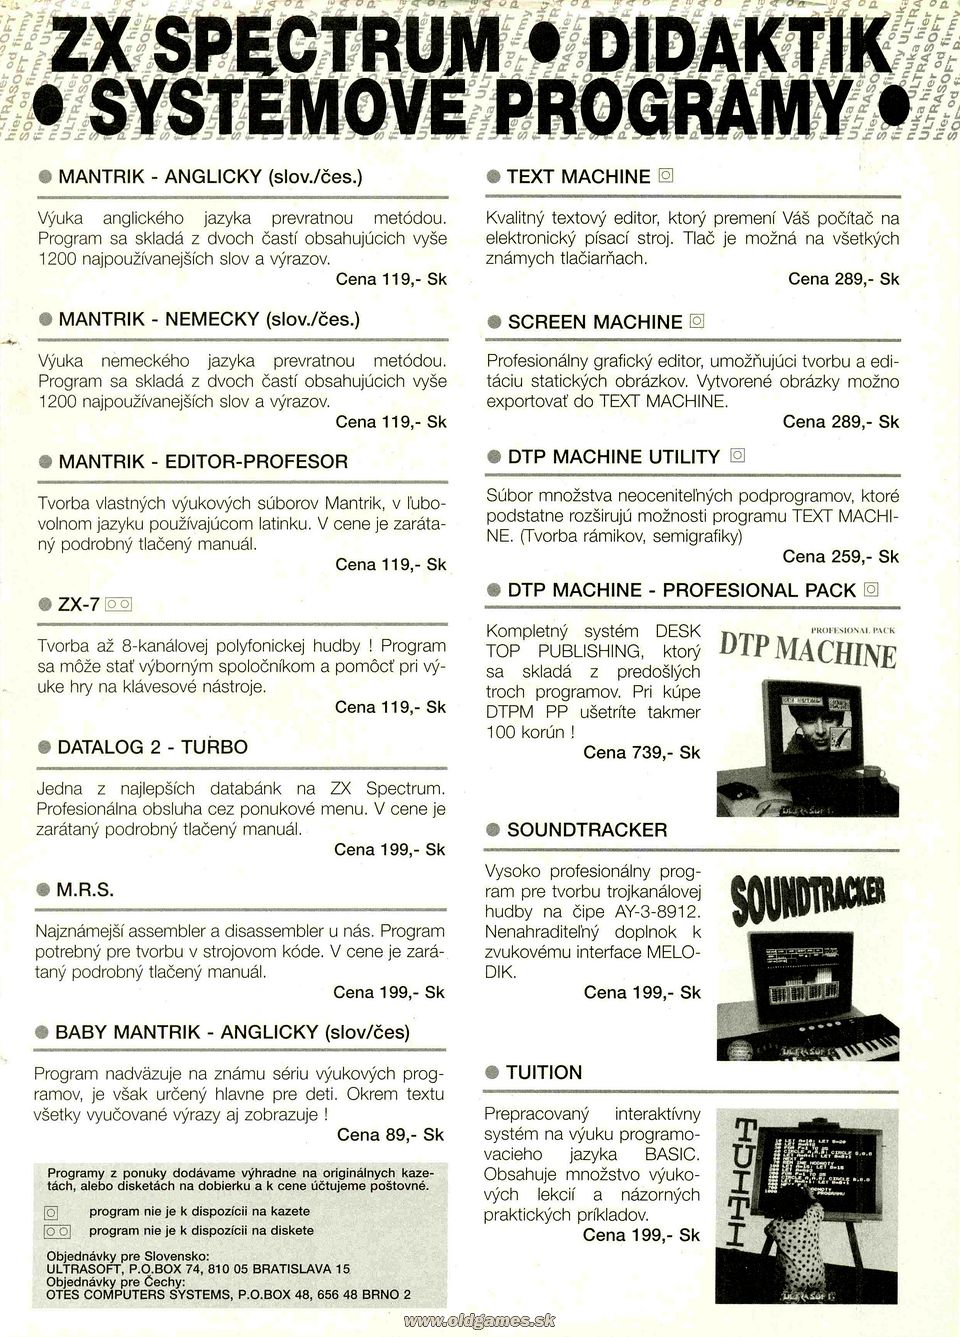 Ultrasoft: Systémové programy pre ZX Spectrum - Didaktik